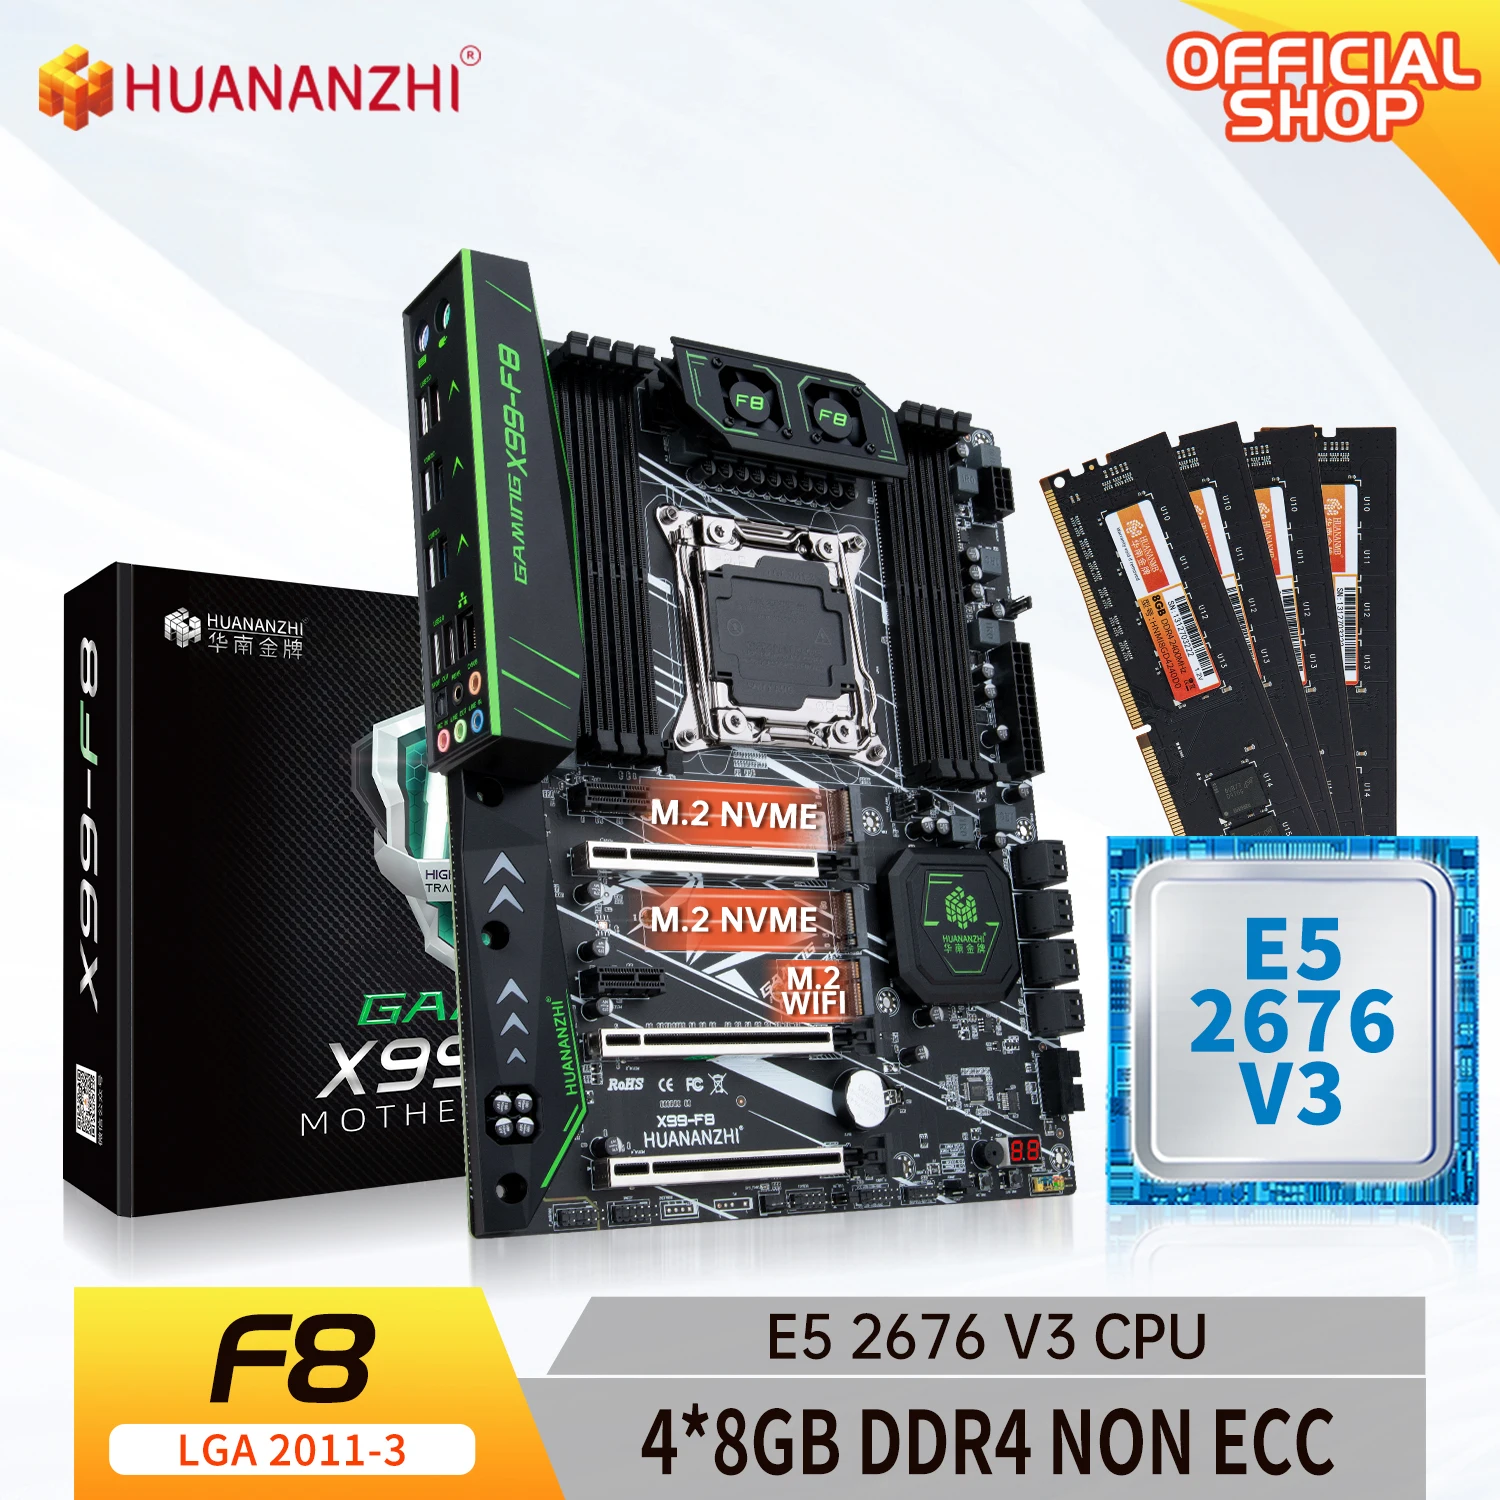 HUANANZHI X99 F8 X99 اللوحة الأم مع إنتل سيون E5 2678 v3 مع 4*8G DDR4 غير ECC الذاكرة كومبو مجموعة أدوات NVME SATA USB